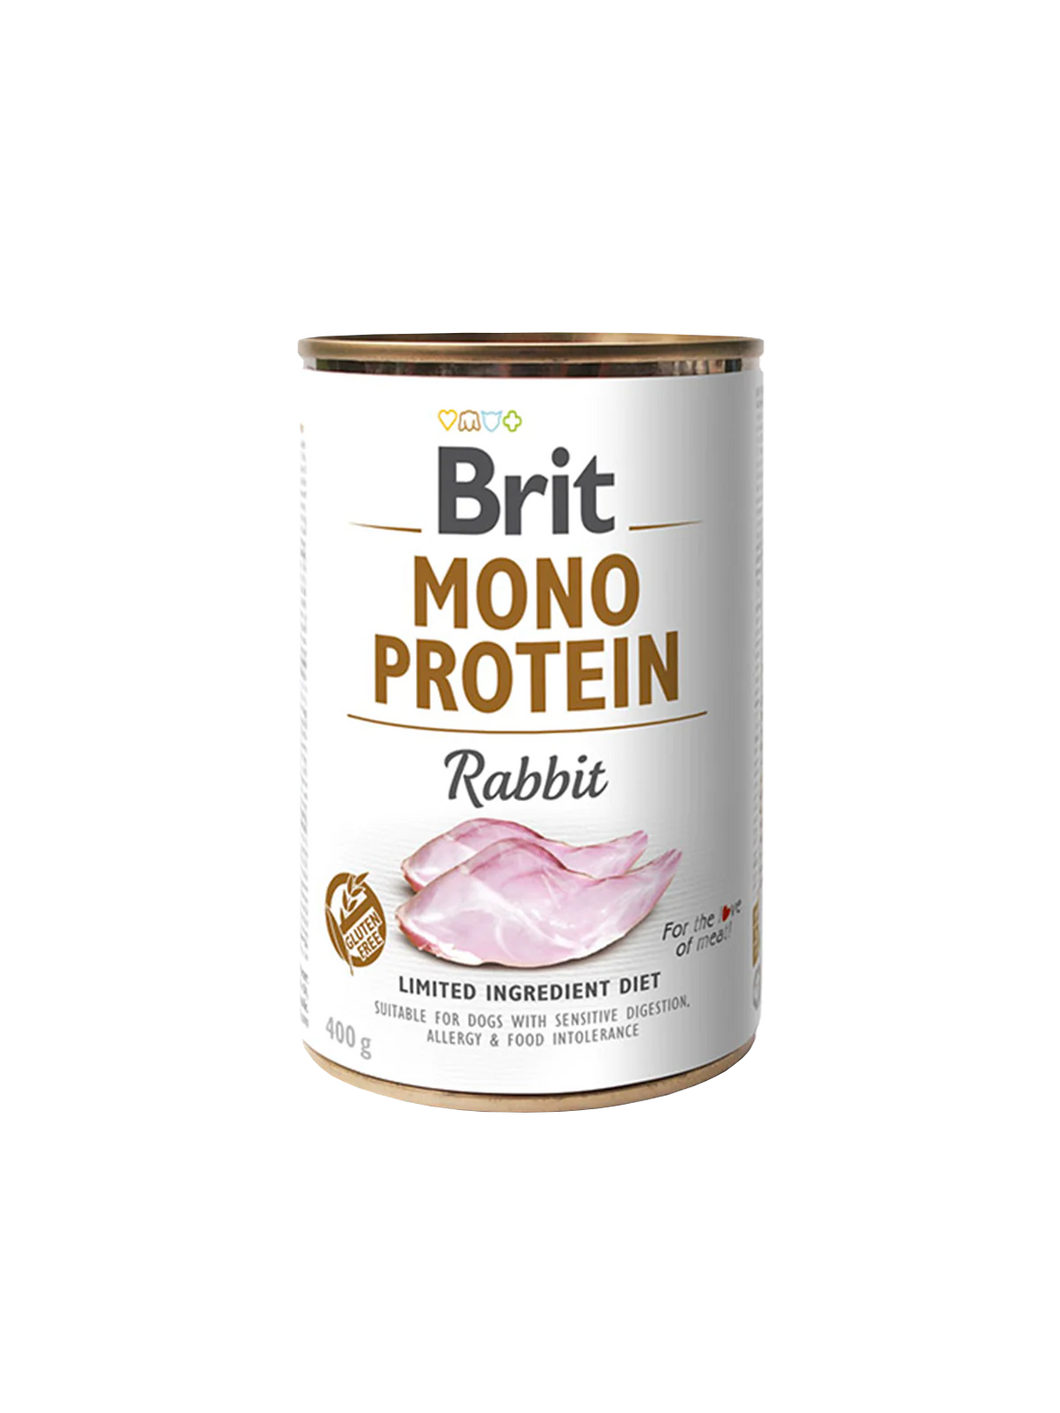 Brit Mono Protein Rabbit  6 pack of 400g